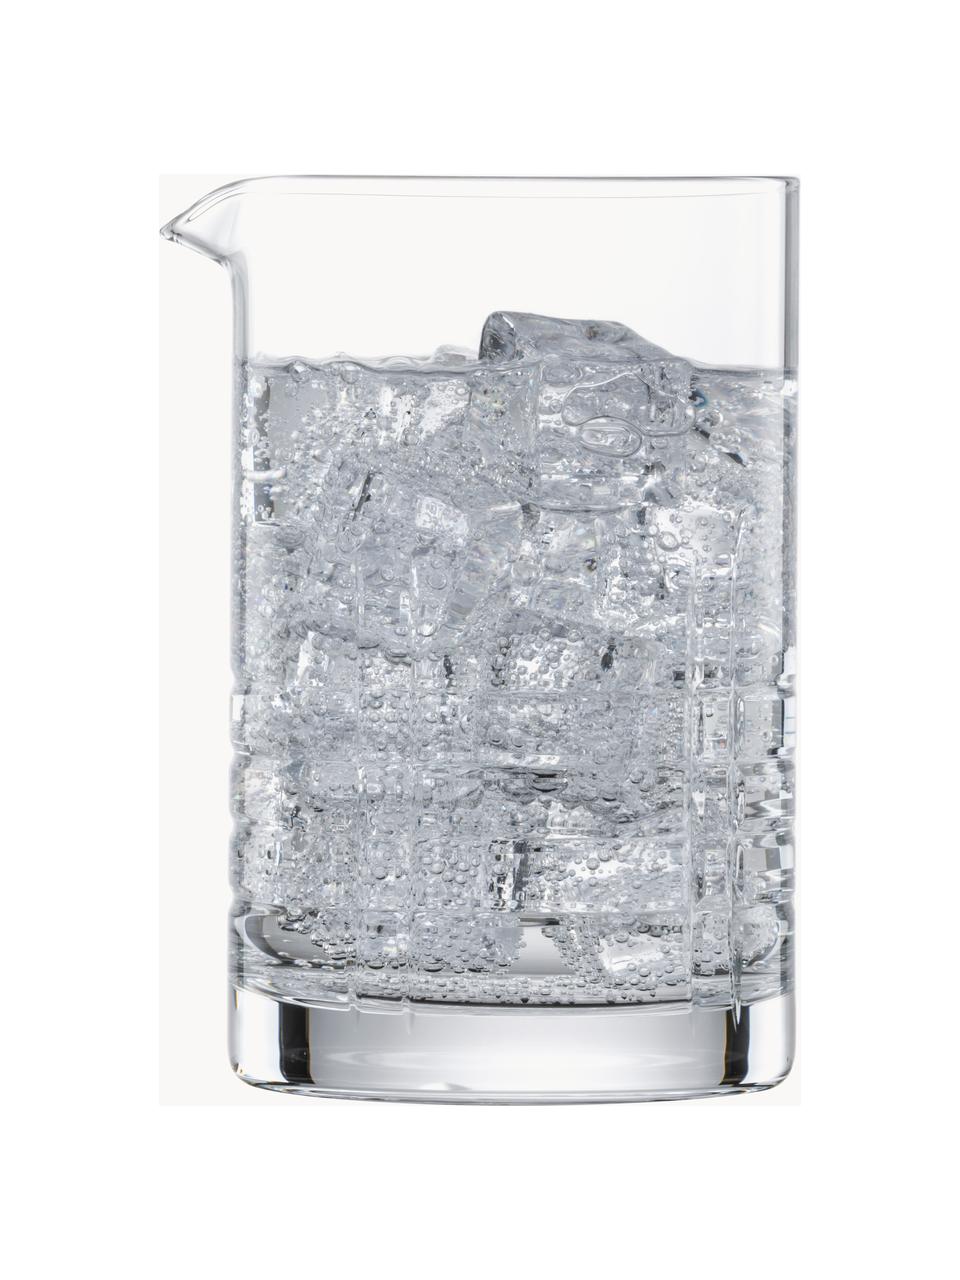 Vaso mezclador de cristal Basic Bar Classic, 500 ml, Cristal Tritan, Transparente, 500 ml